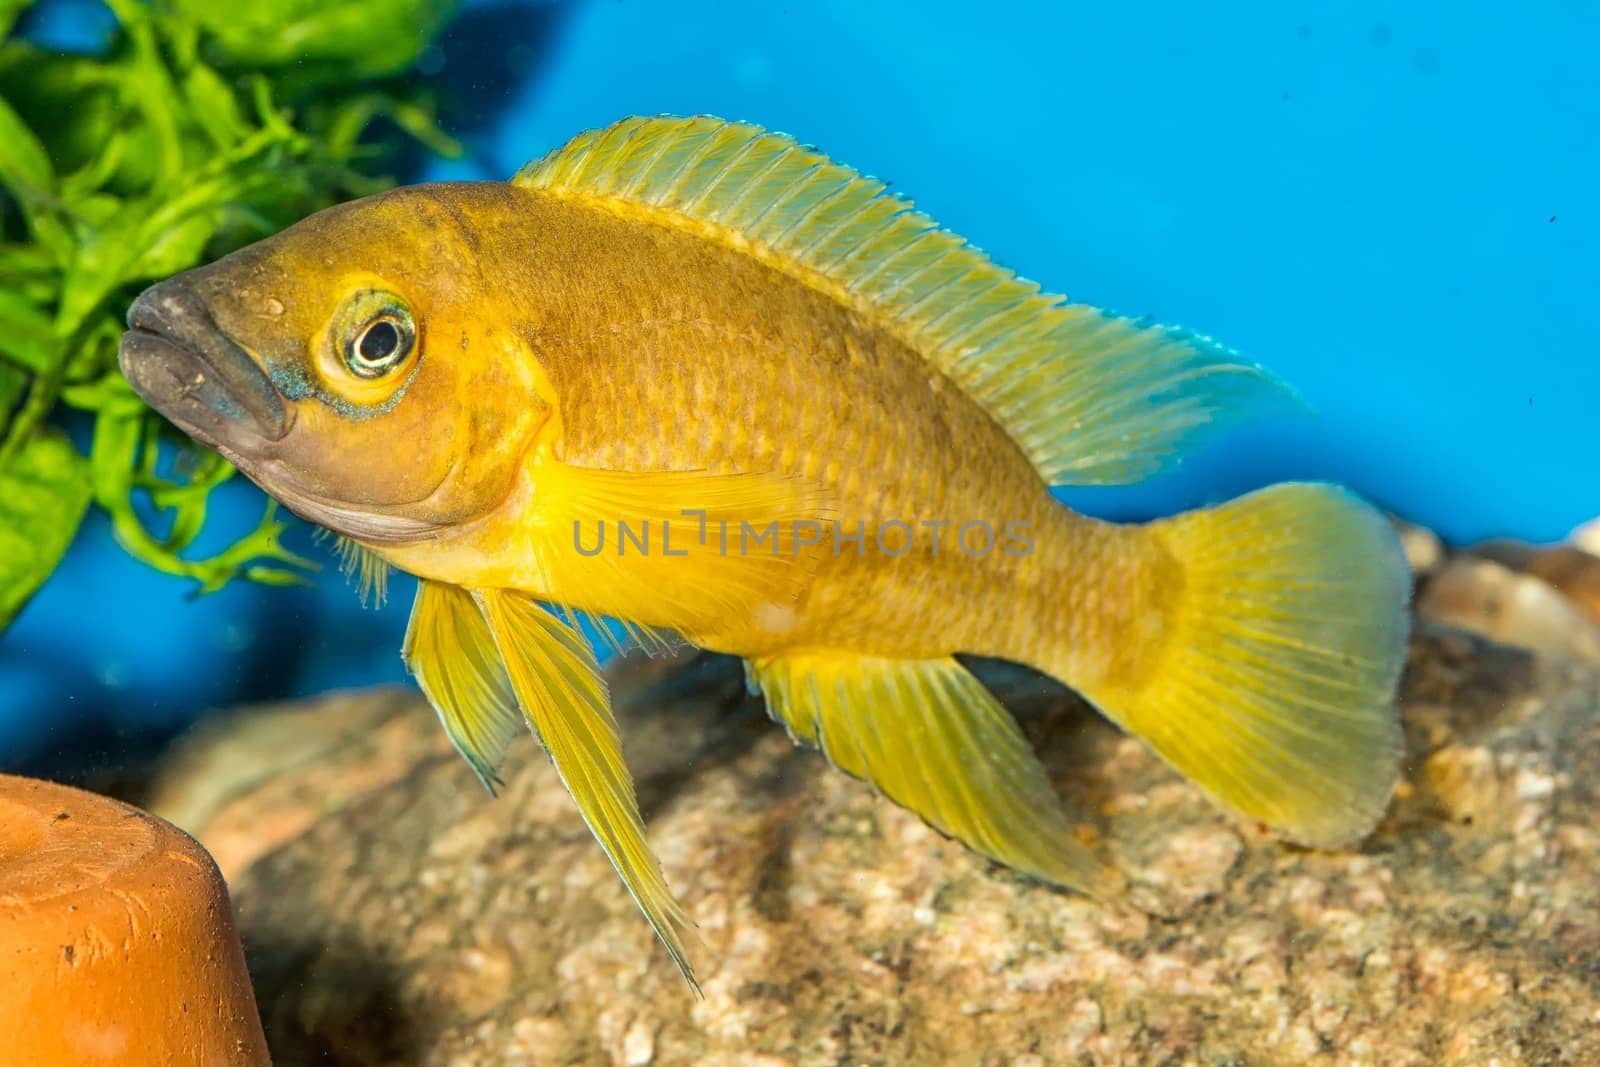 Tropical freshwater aquarium fish from genus Neolamprologus.